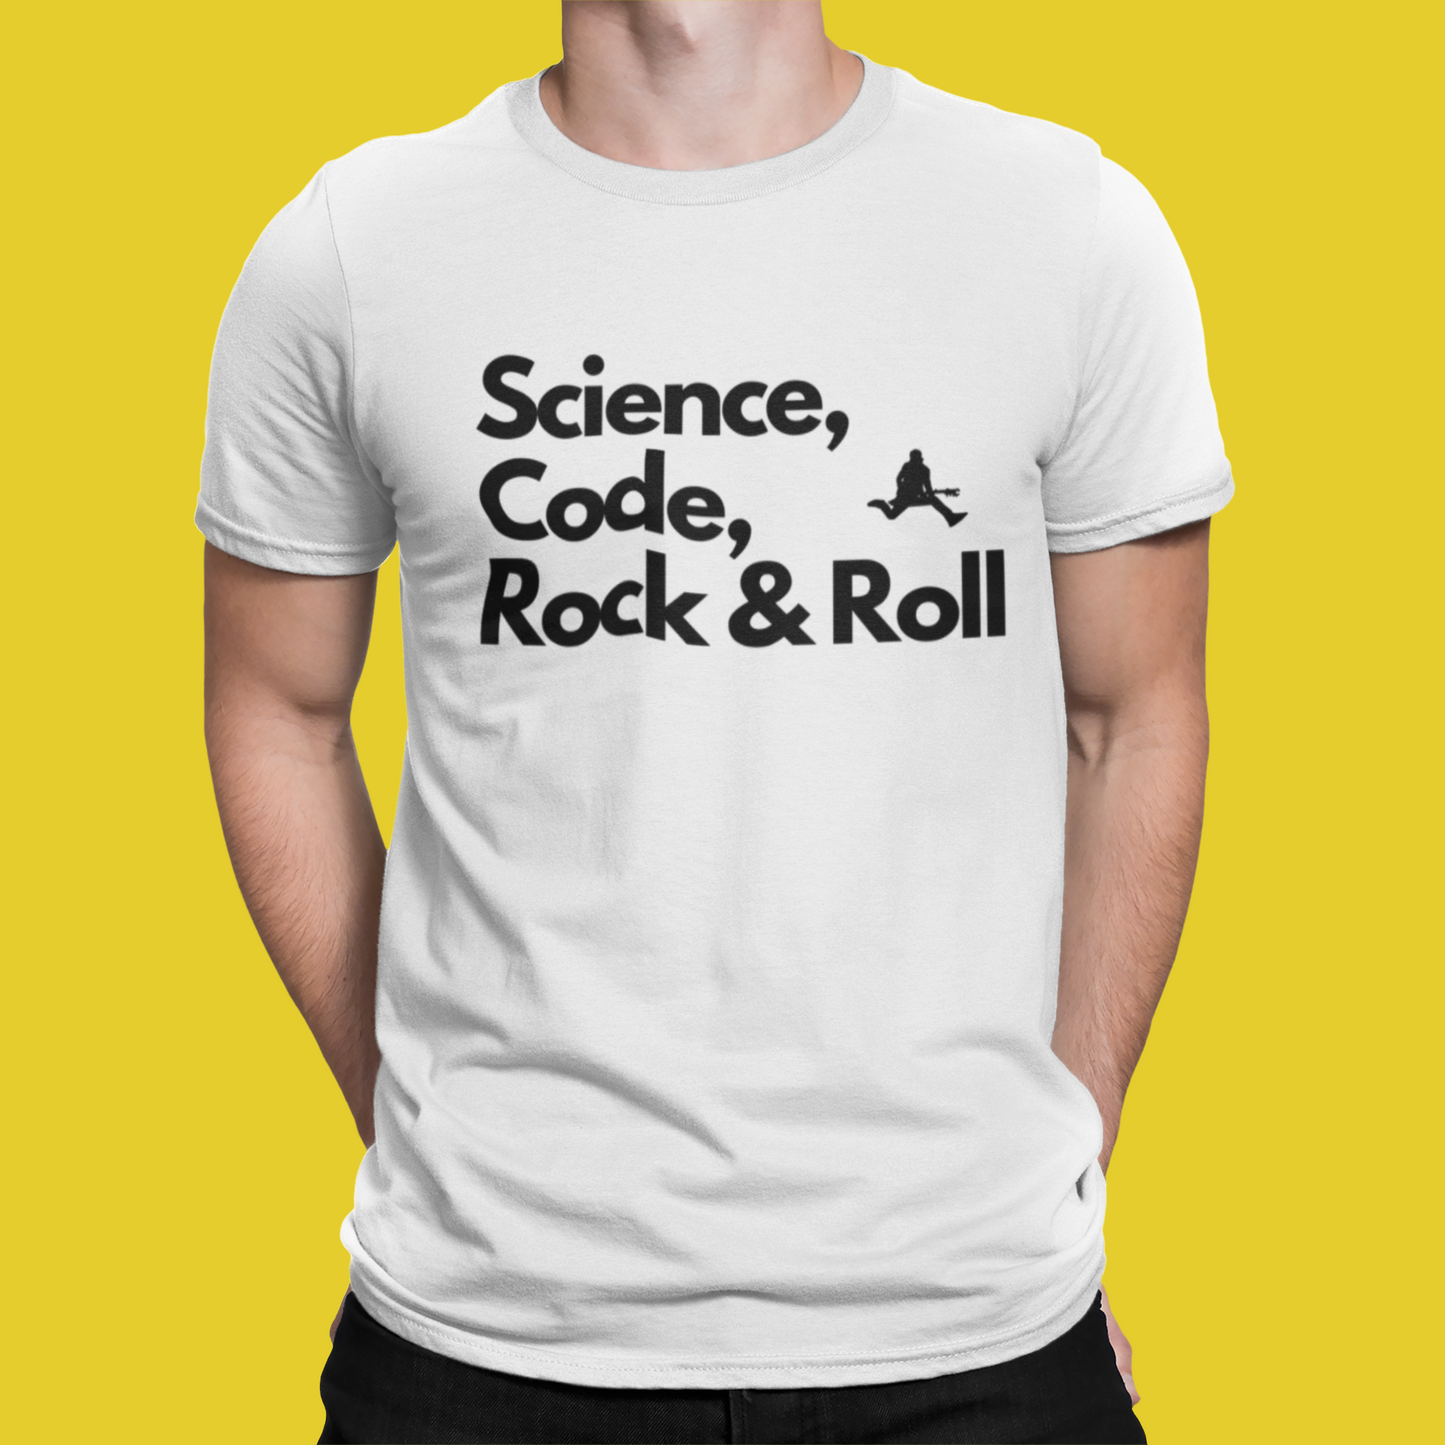 Science, Code & Rock 'n' Roll - Tshirt